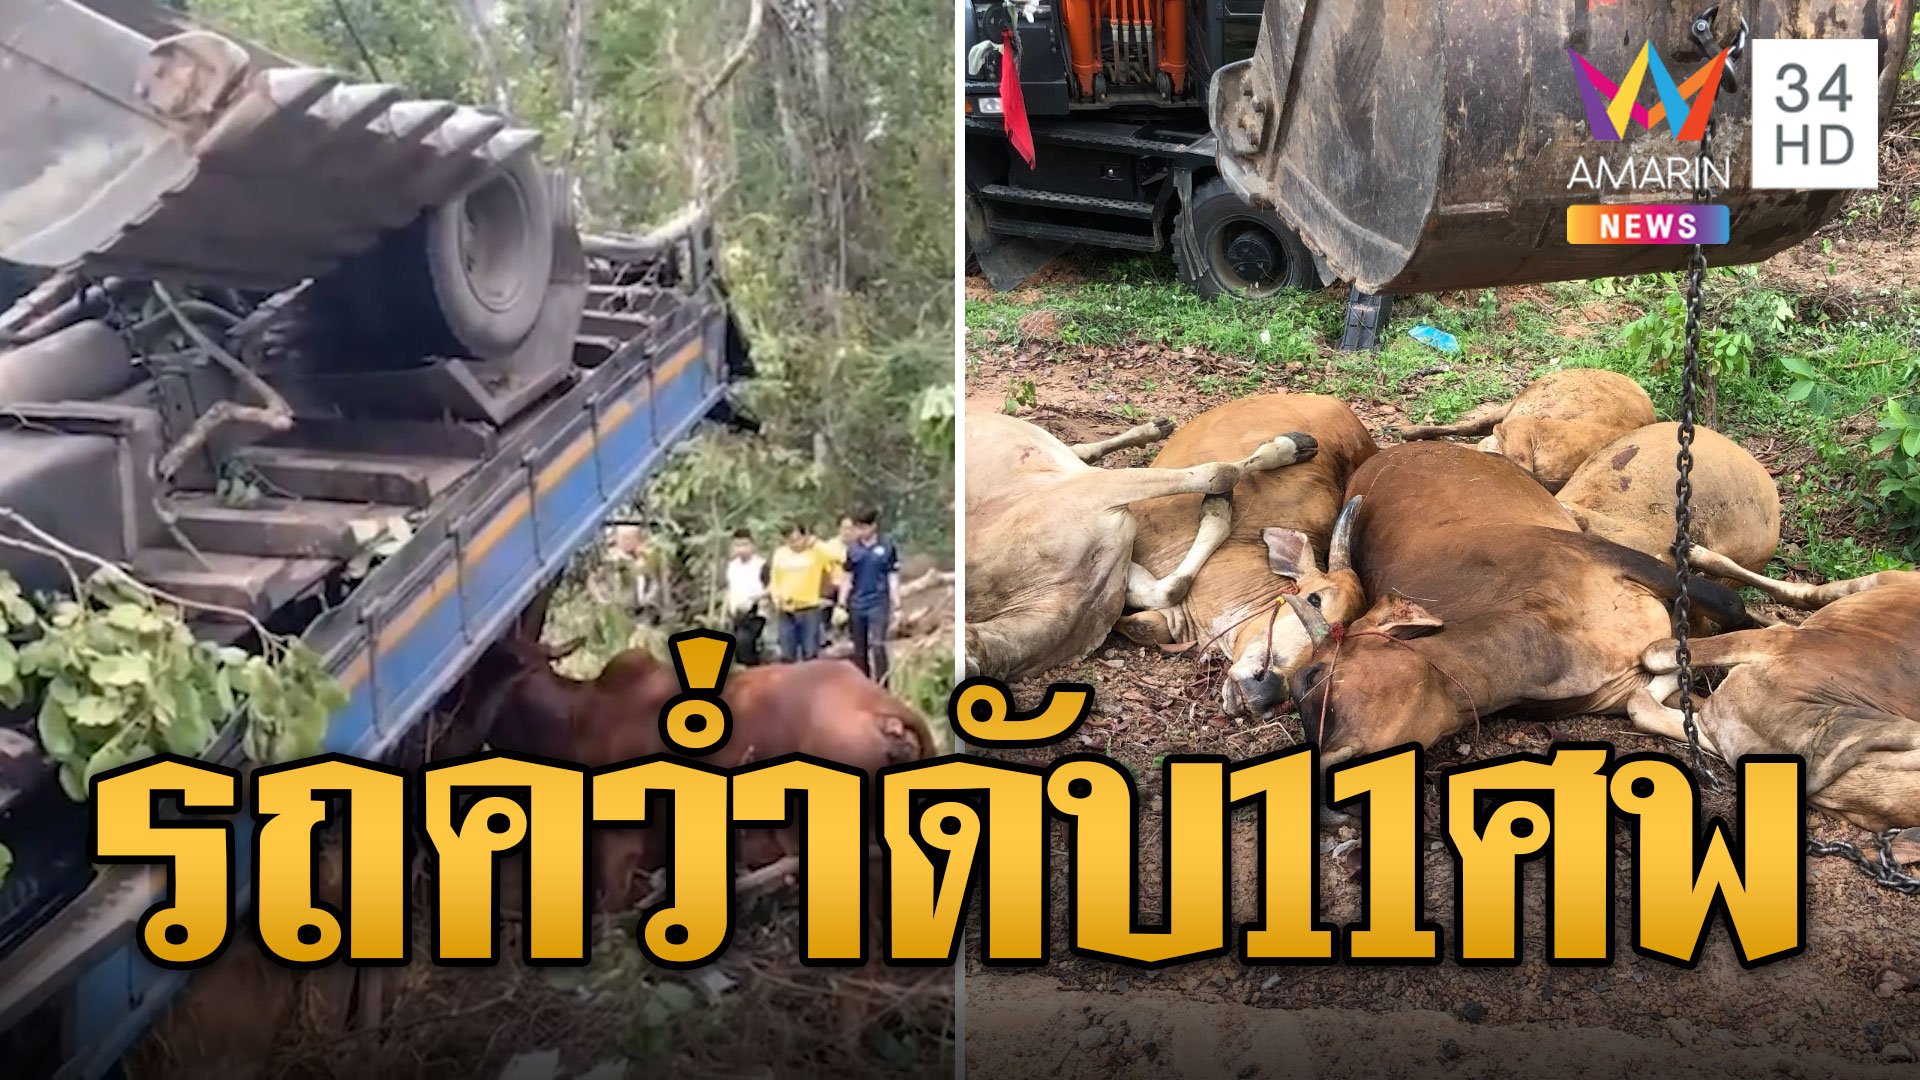 รถบรรทุกวัวเสียหลักพลิกคว่ำ 11 ชีวิตดับคาที่ | ข่าวอรุณอมรินทร์ | 1 มิ.ย. 67 | AMARIN TVHD34